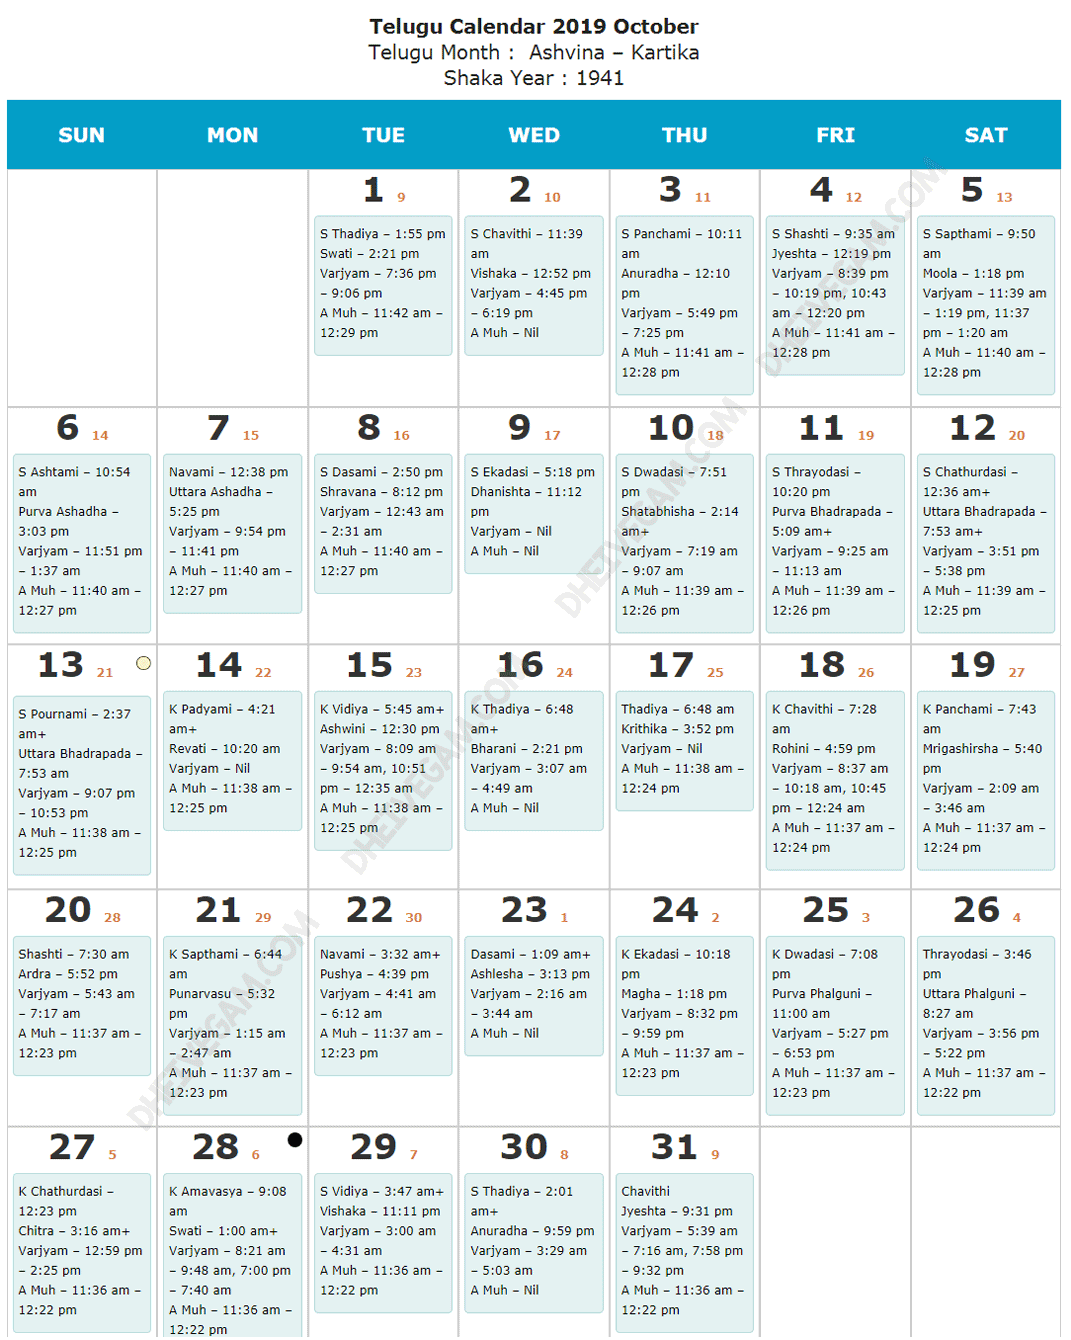 October 2019 Telugu calendar